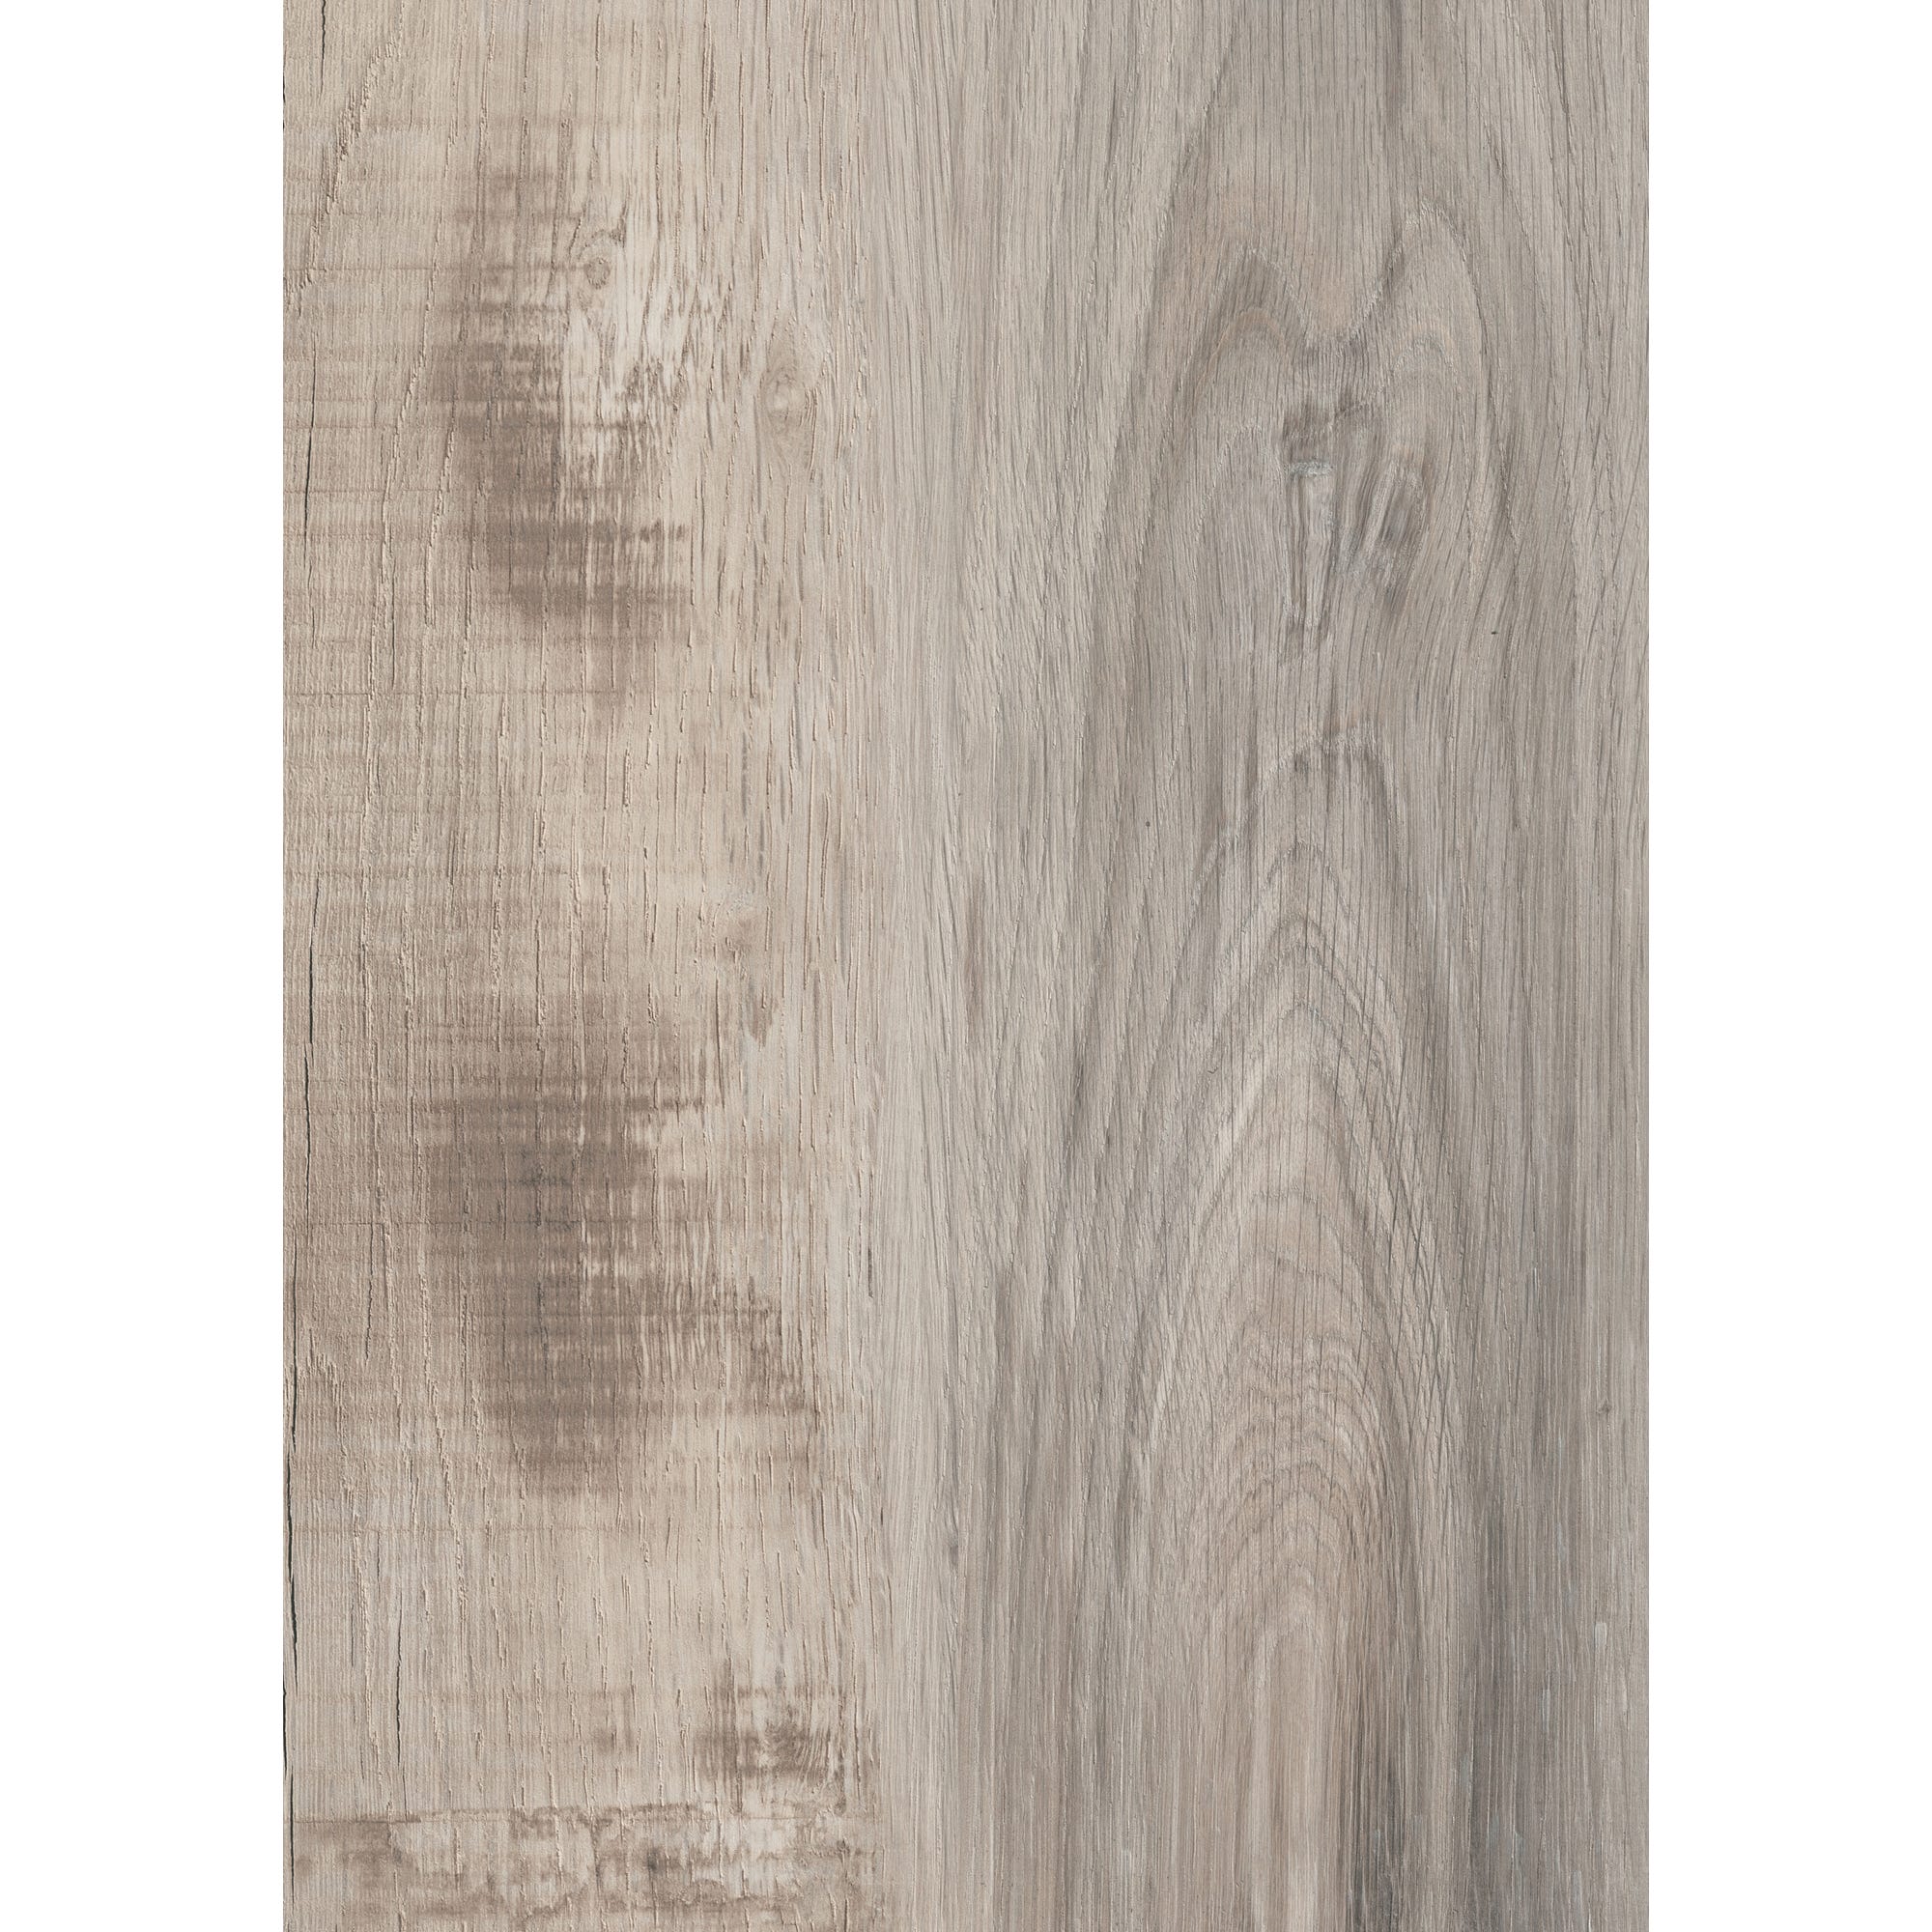 Plan de travail stratifié imitation bois Chêne celtique/Chêne d'Espagne L.4120 x P.650 x ép.38 mm hydrofuge 4